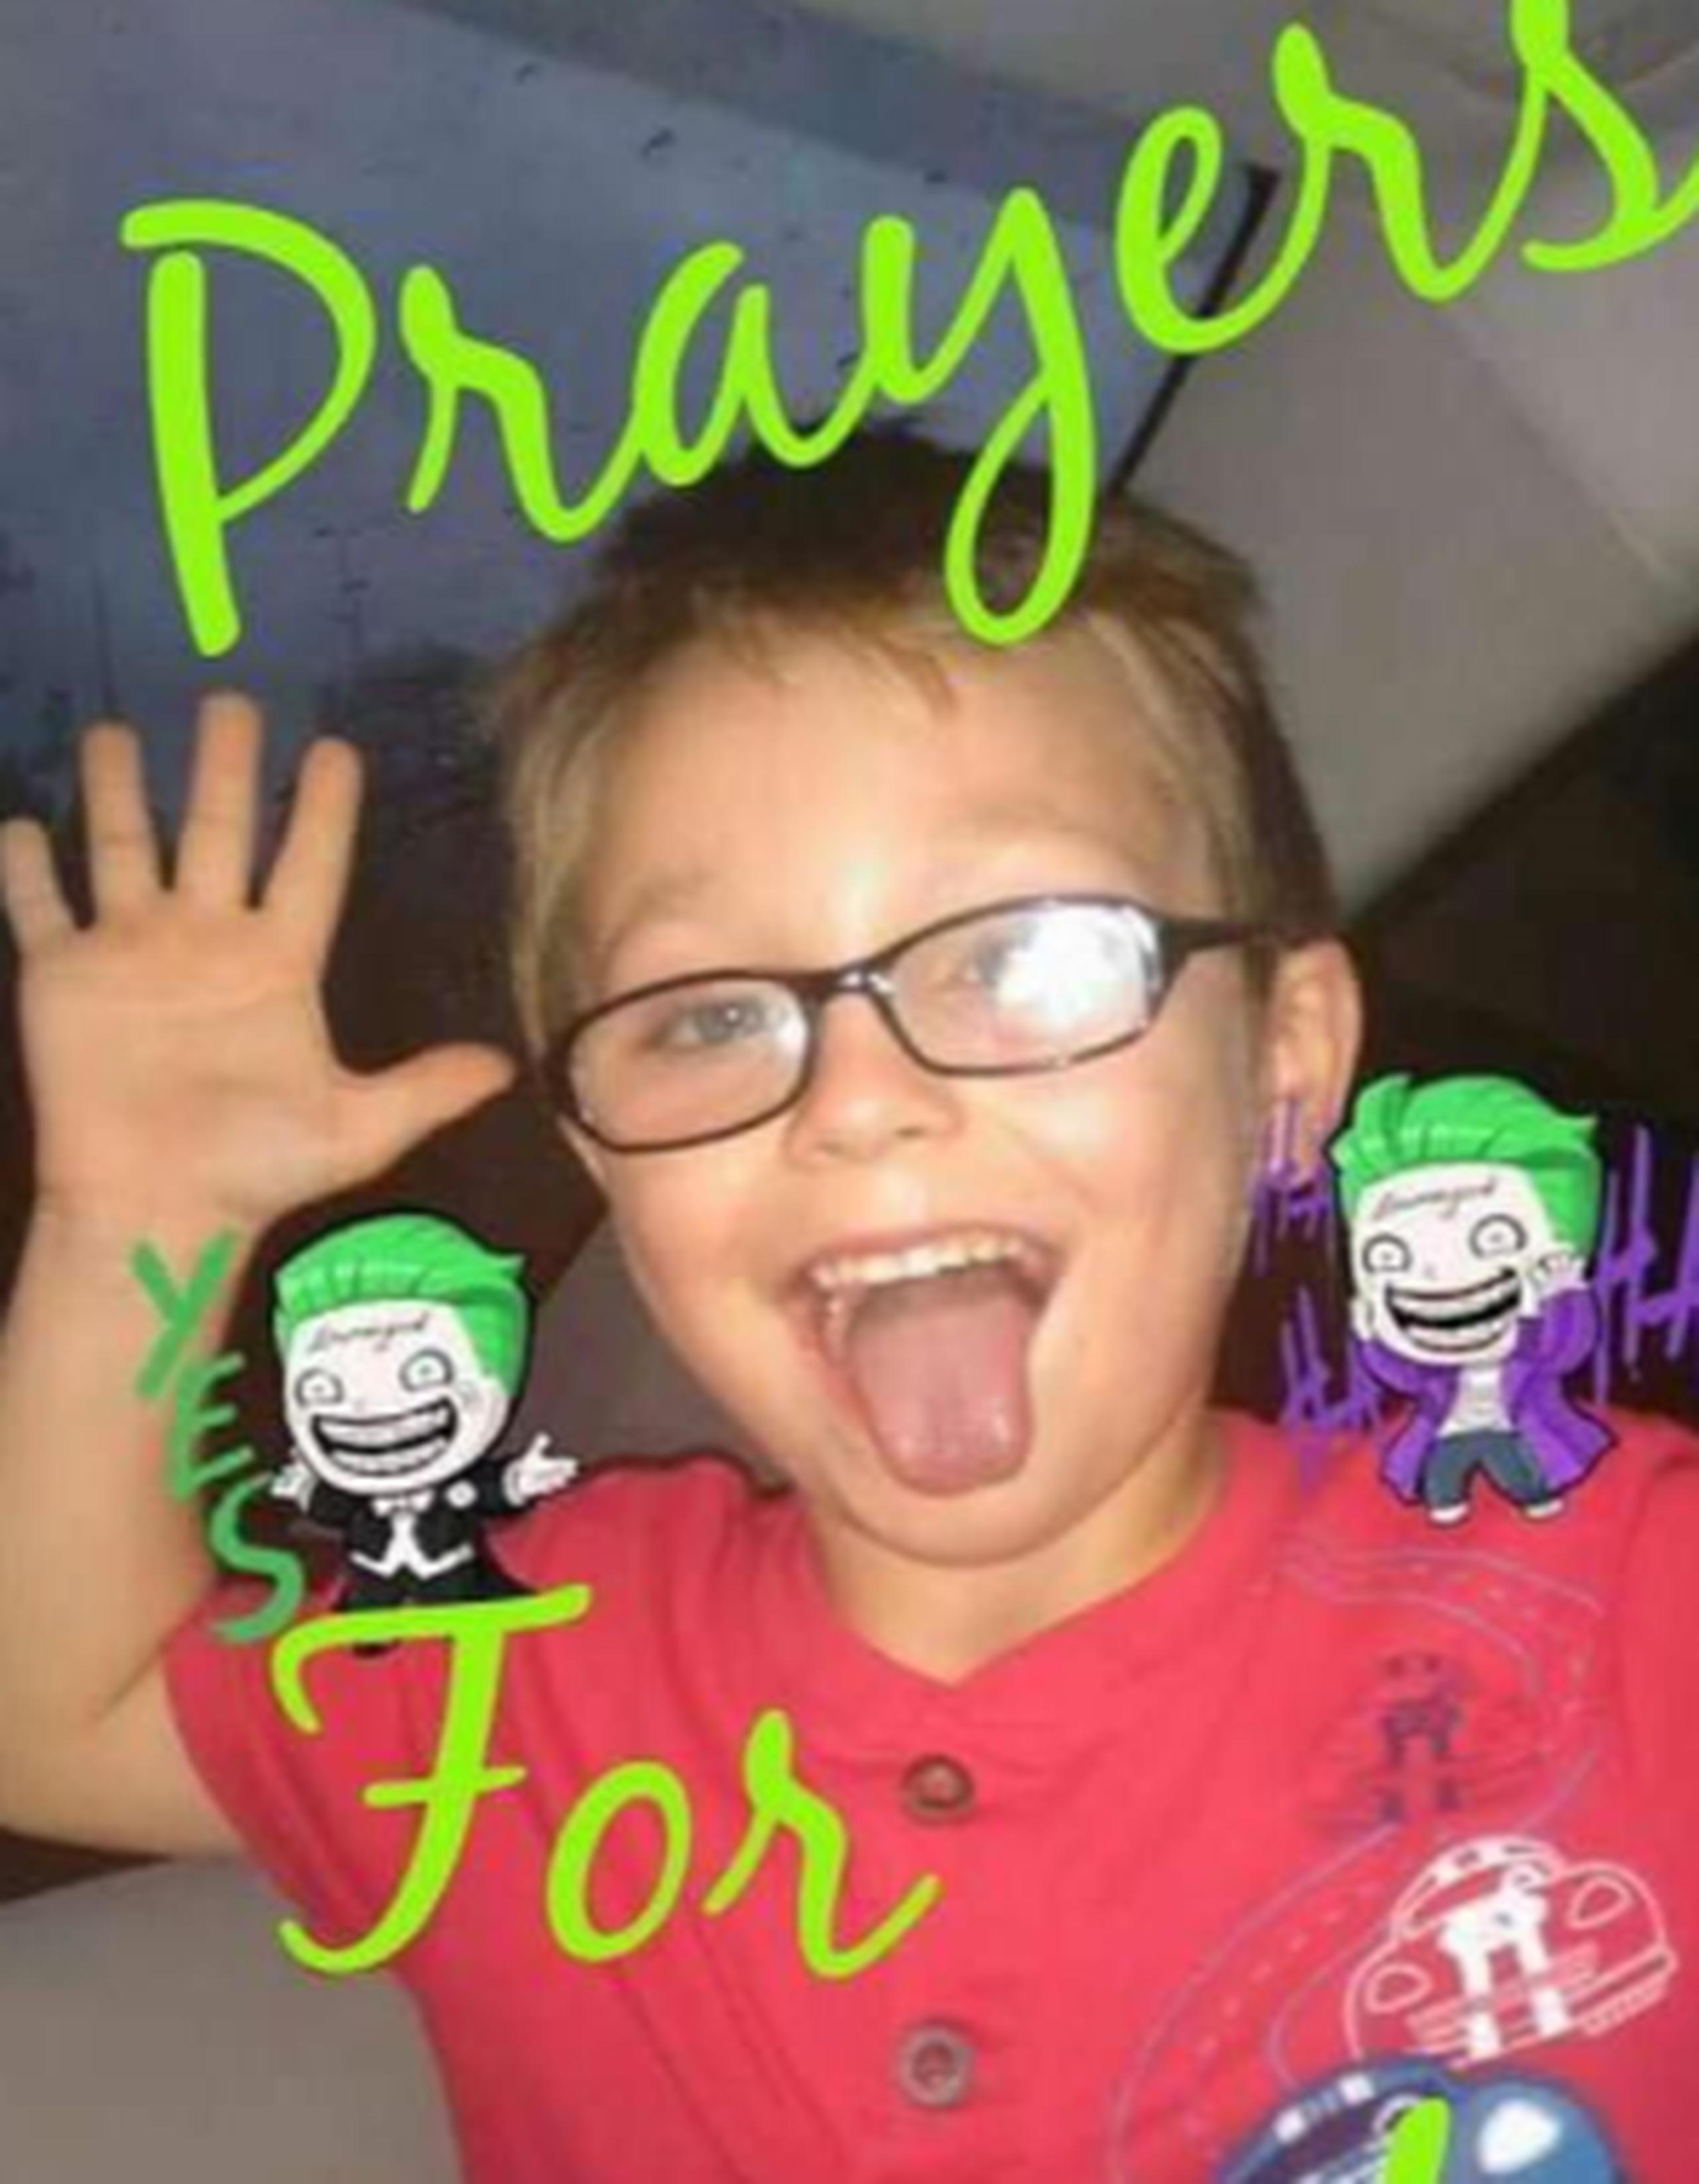 Jacob estaba acompañado de su familia en el hospital Greenville Memorial desde que fue herido. (Facebook)